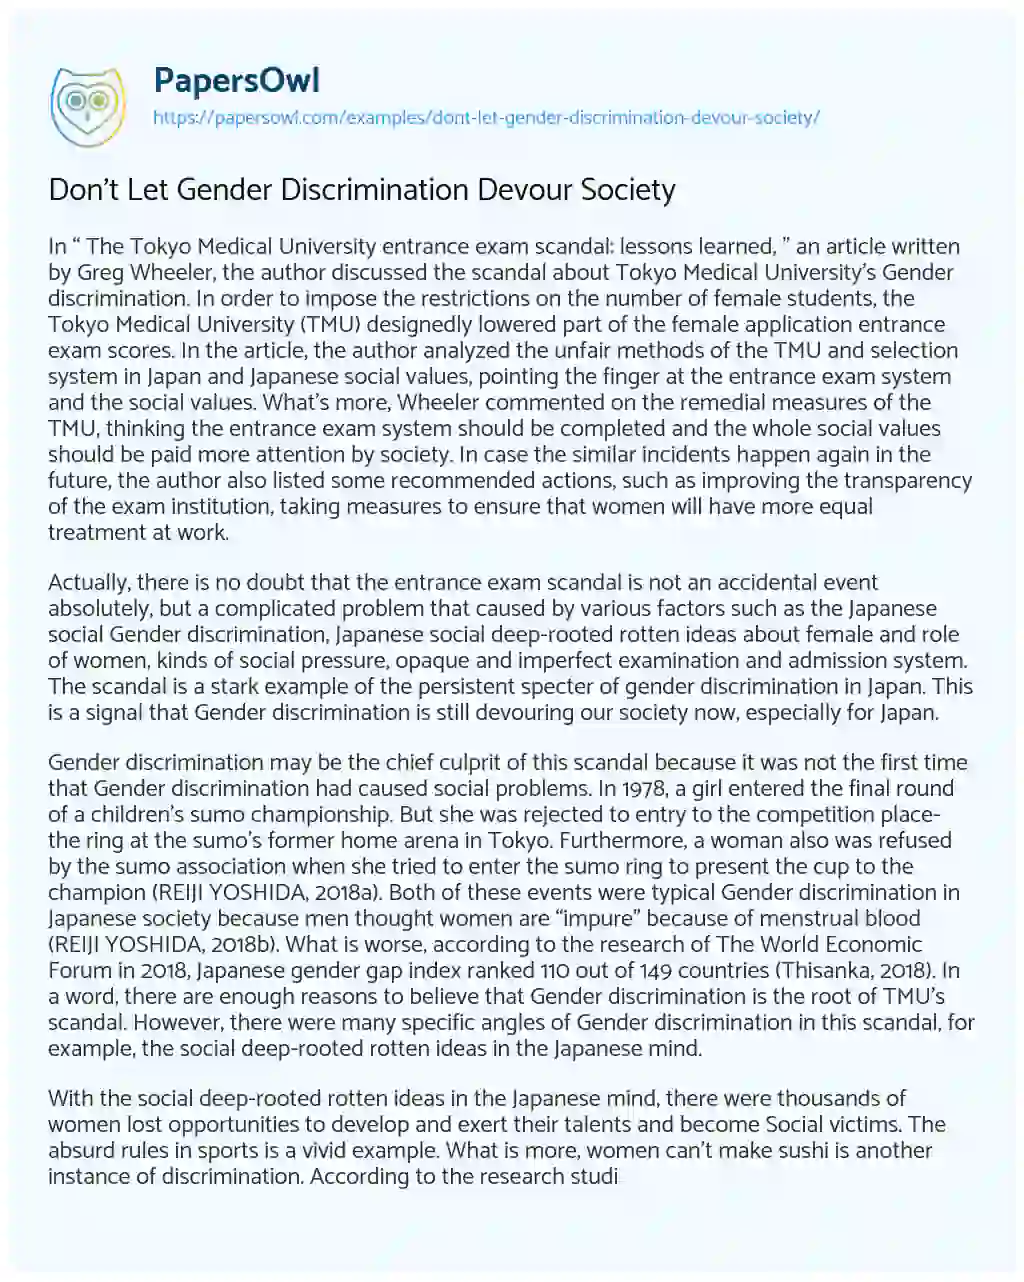 Don’t Let Gender Discrimination Devour Society essay